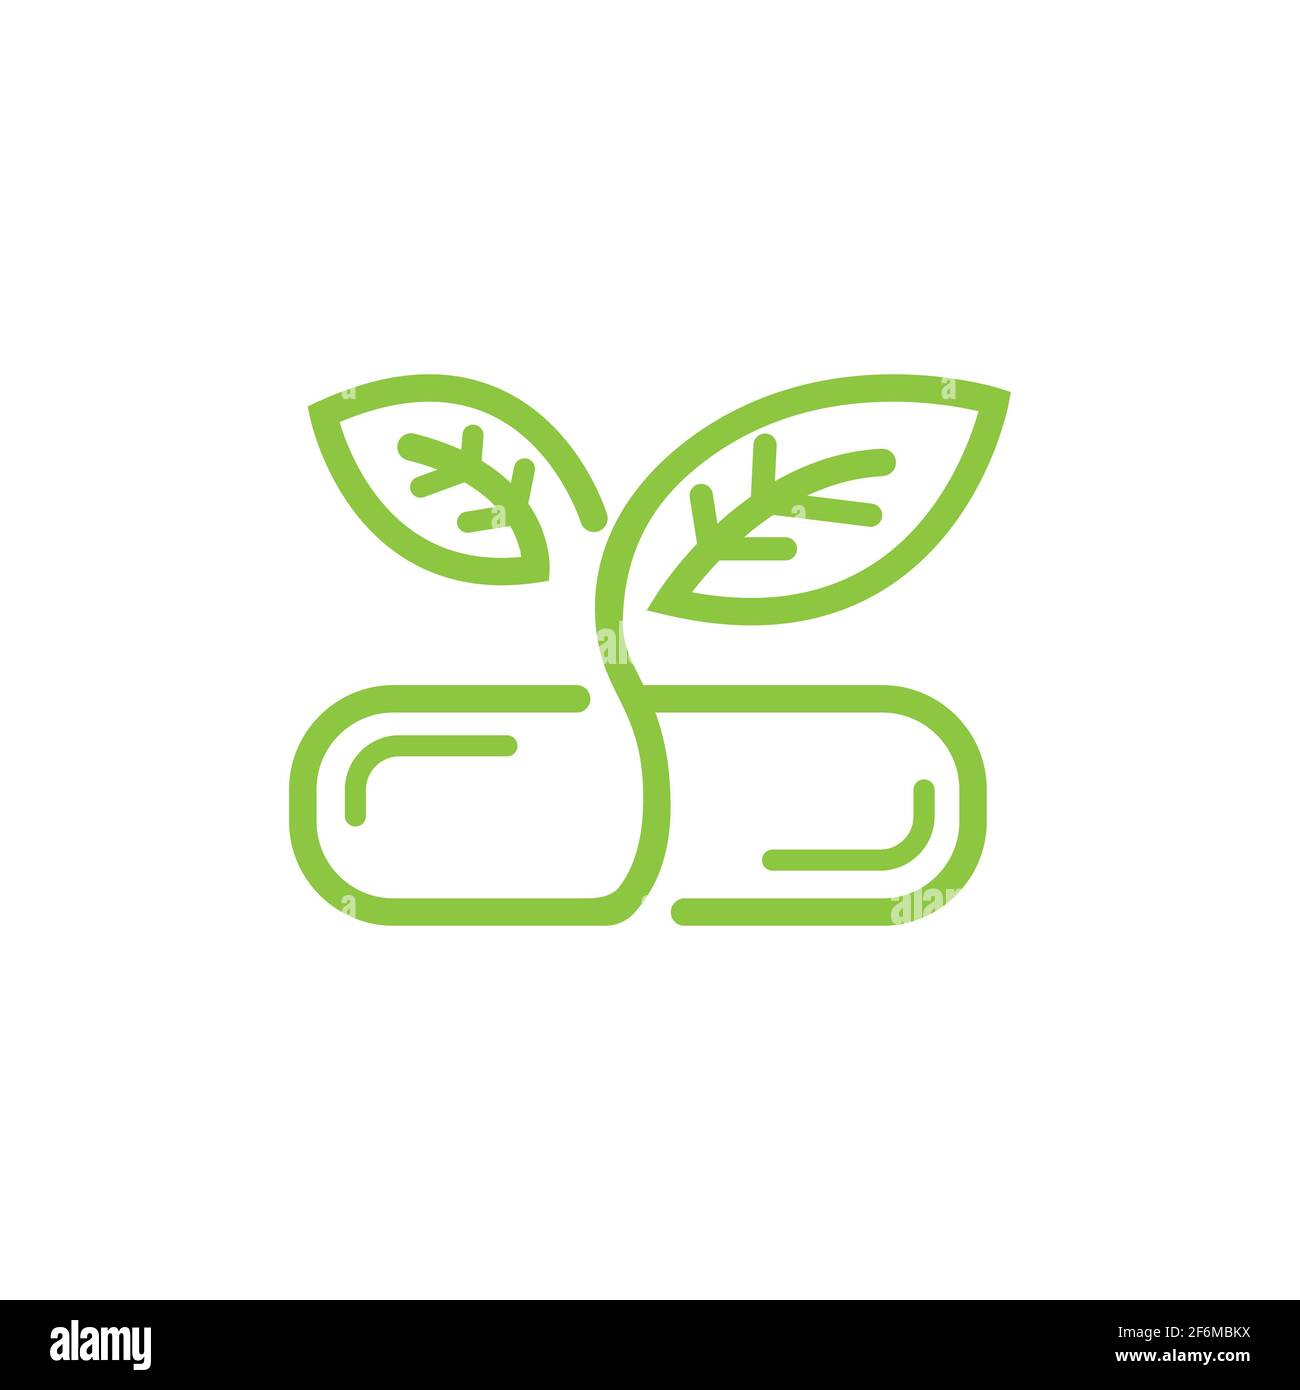 Pflanzliche Nahrung Ergänzung Logo Design Vektor Bild. Kapsel mit Blättern oder Pflanze mit Kine Art Design Stil für pflanzliche Nahrung Vitamin oder suplement Logo con Stock Vektor